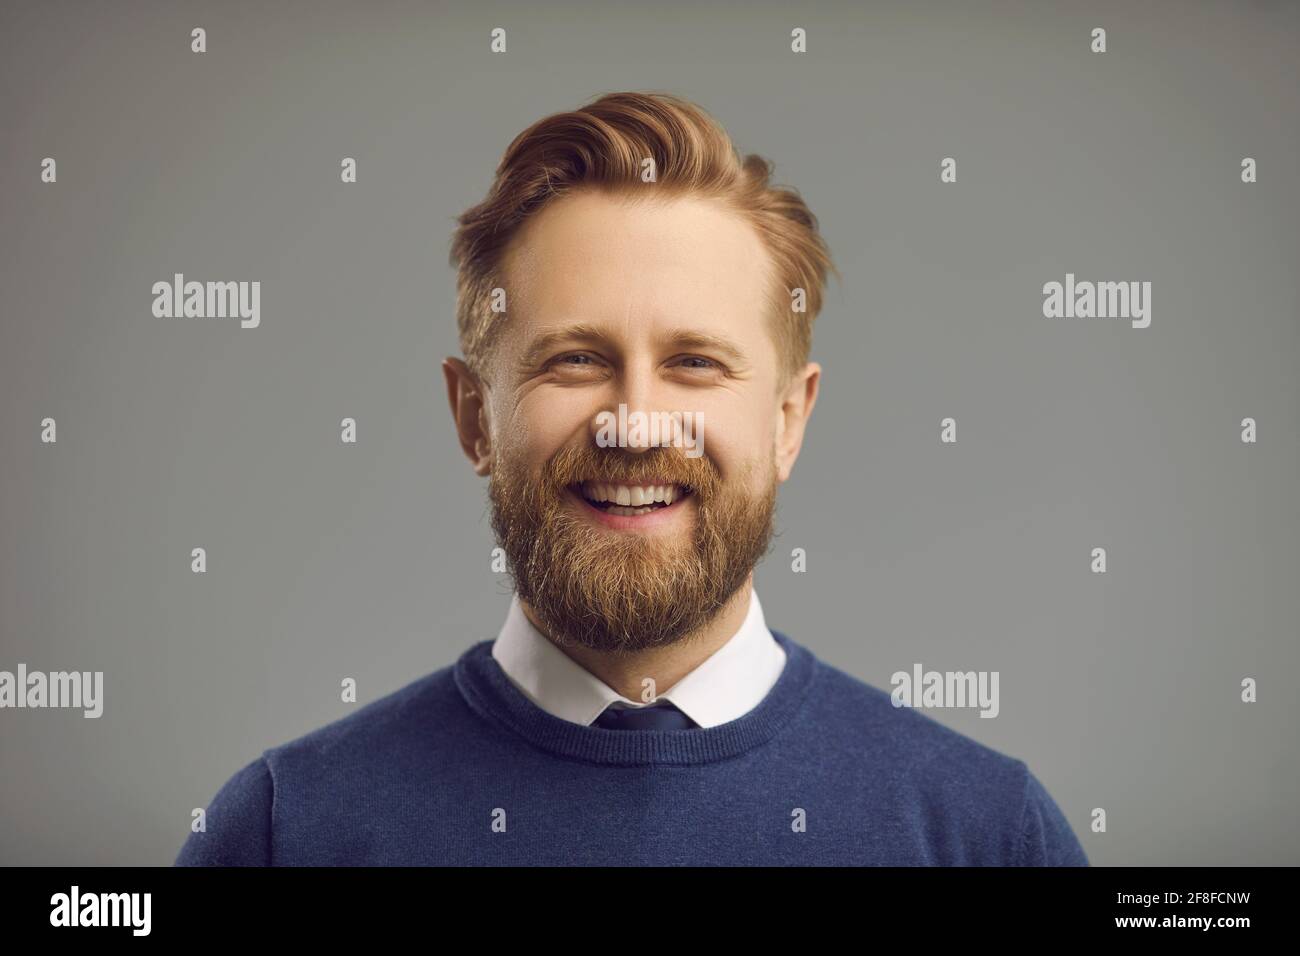 Portrait en studio d'un homme heureux avec une barbe épaisse, une moustache et un sourire positif amical Banque D'Images